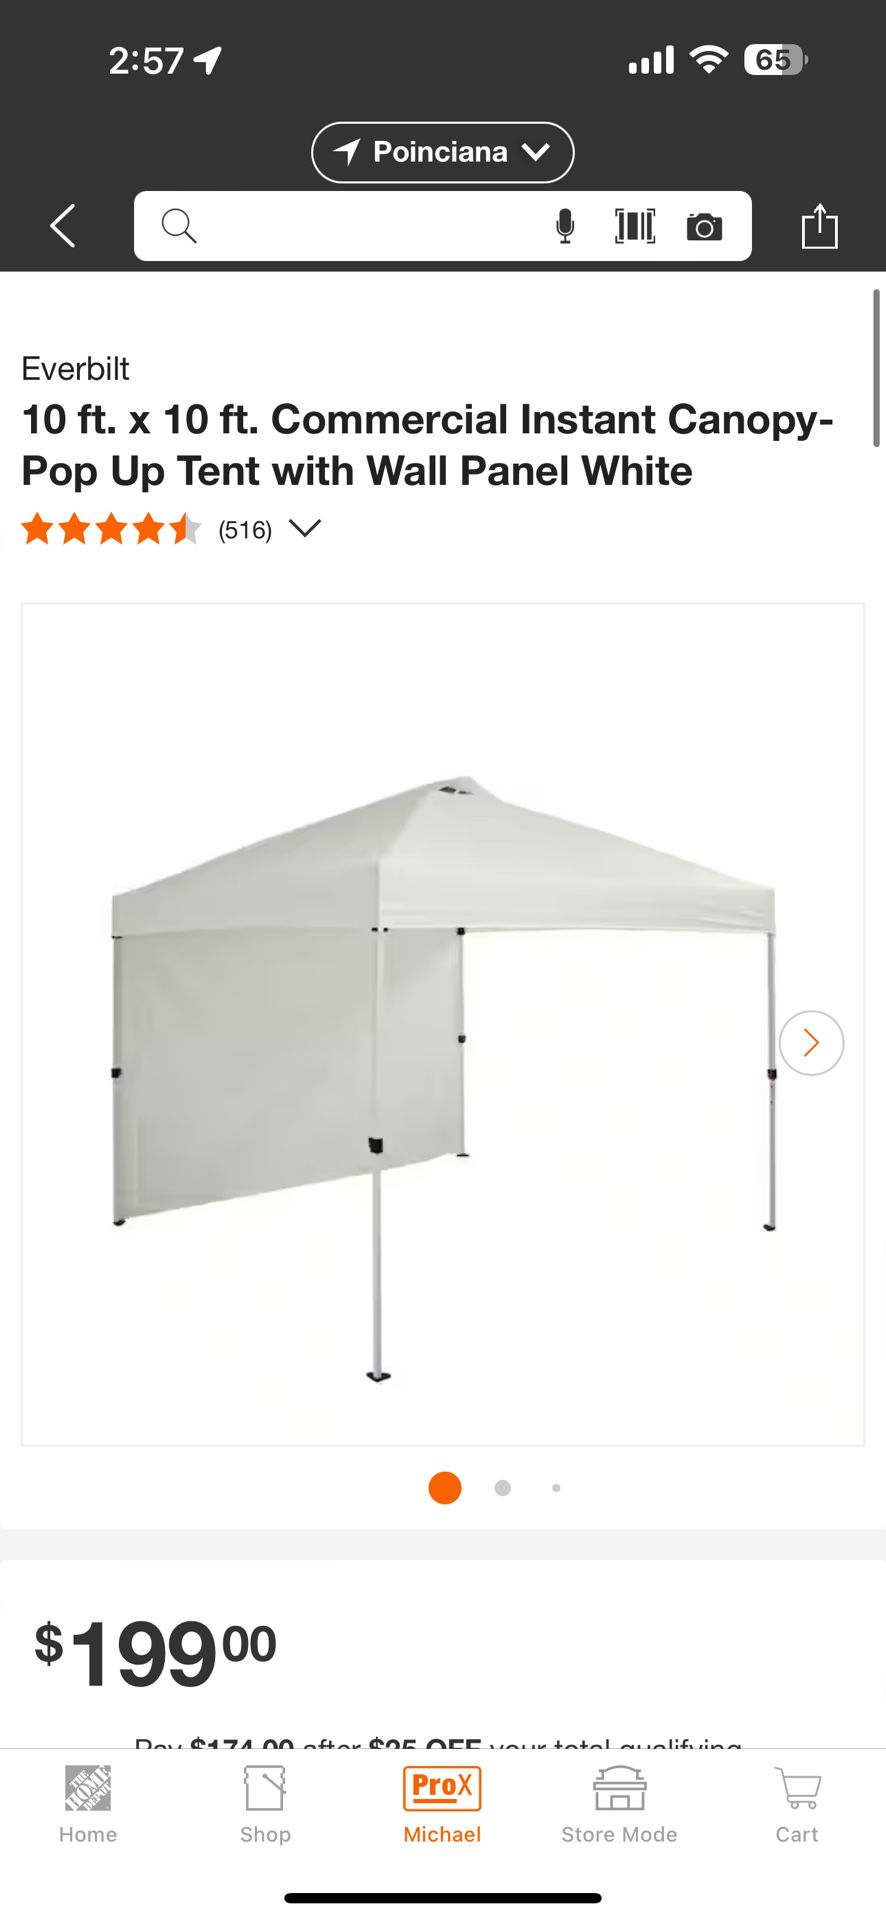 Everbilt Tent from Home Depot 